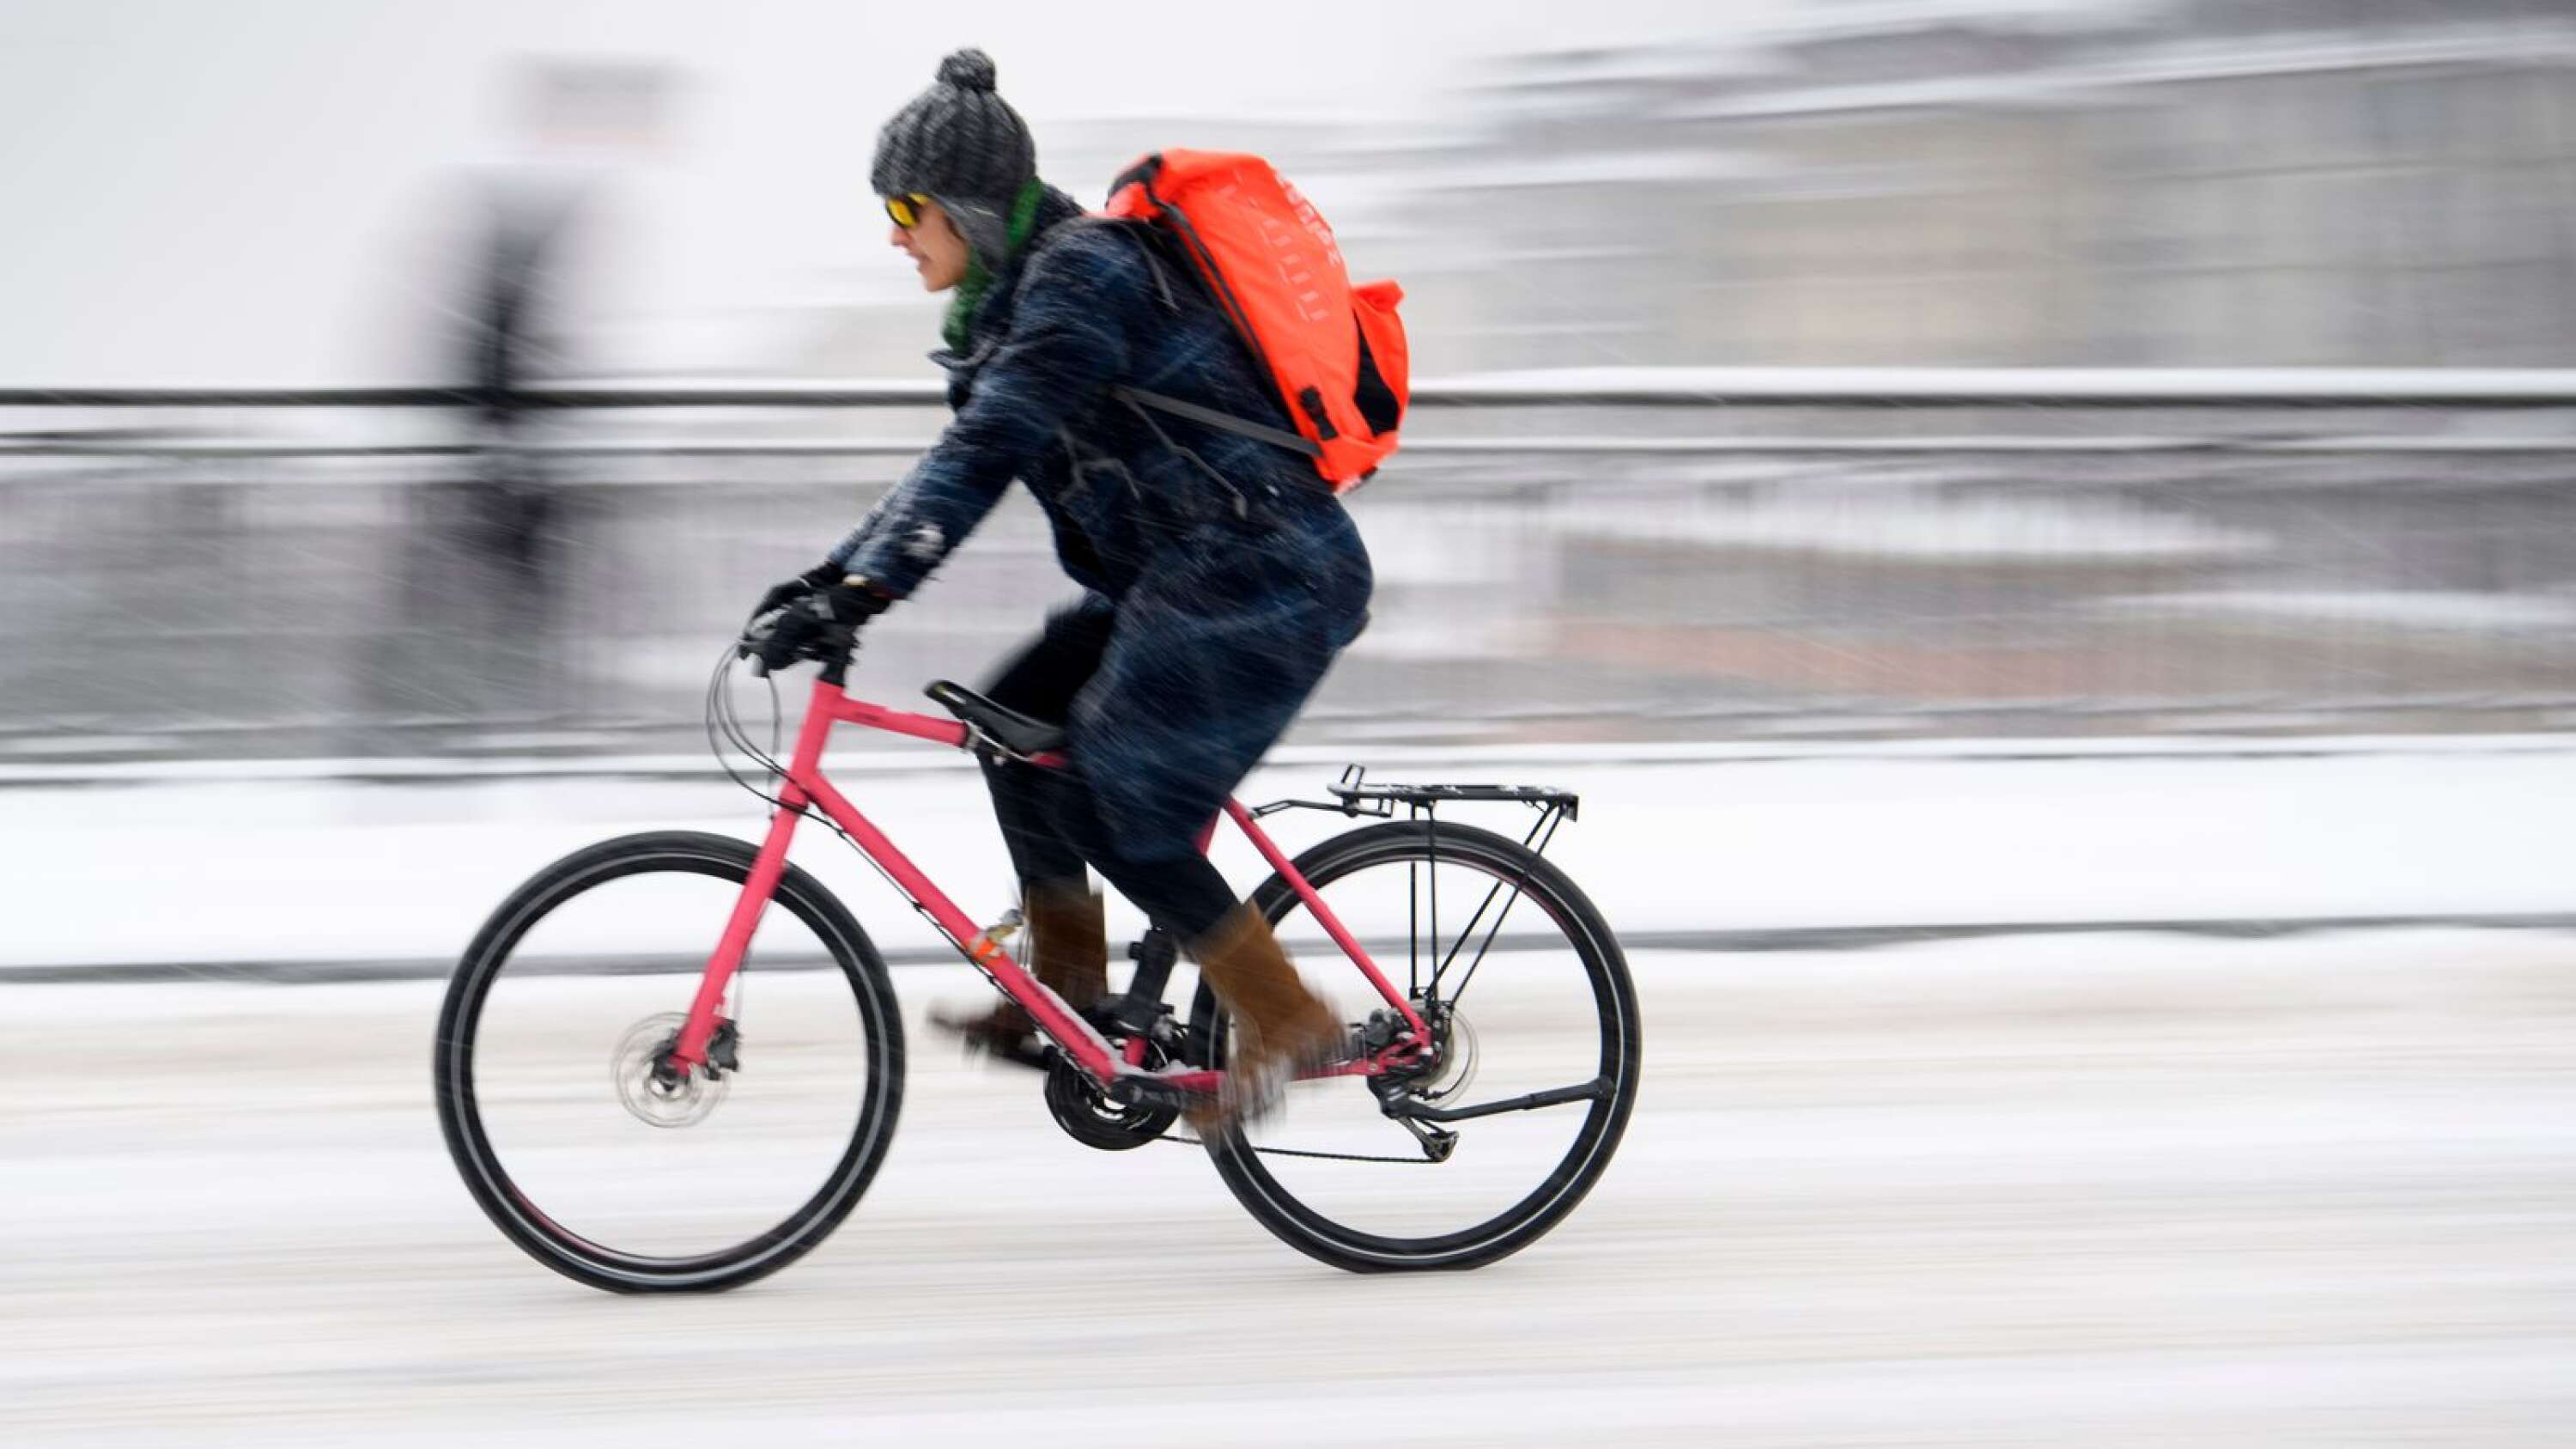 Titre : Pour l’auteur, l’utilisation du vélo en zone urbaine devrait être plus privilégiée que celle des véhicules à moteur